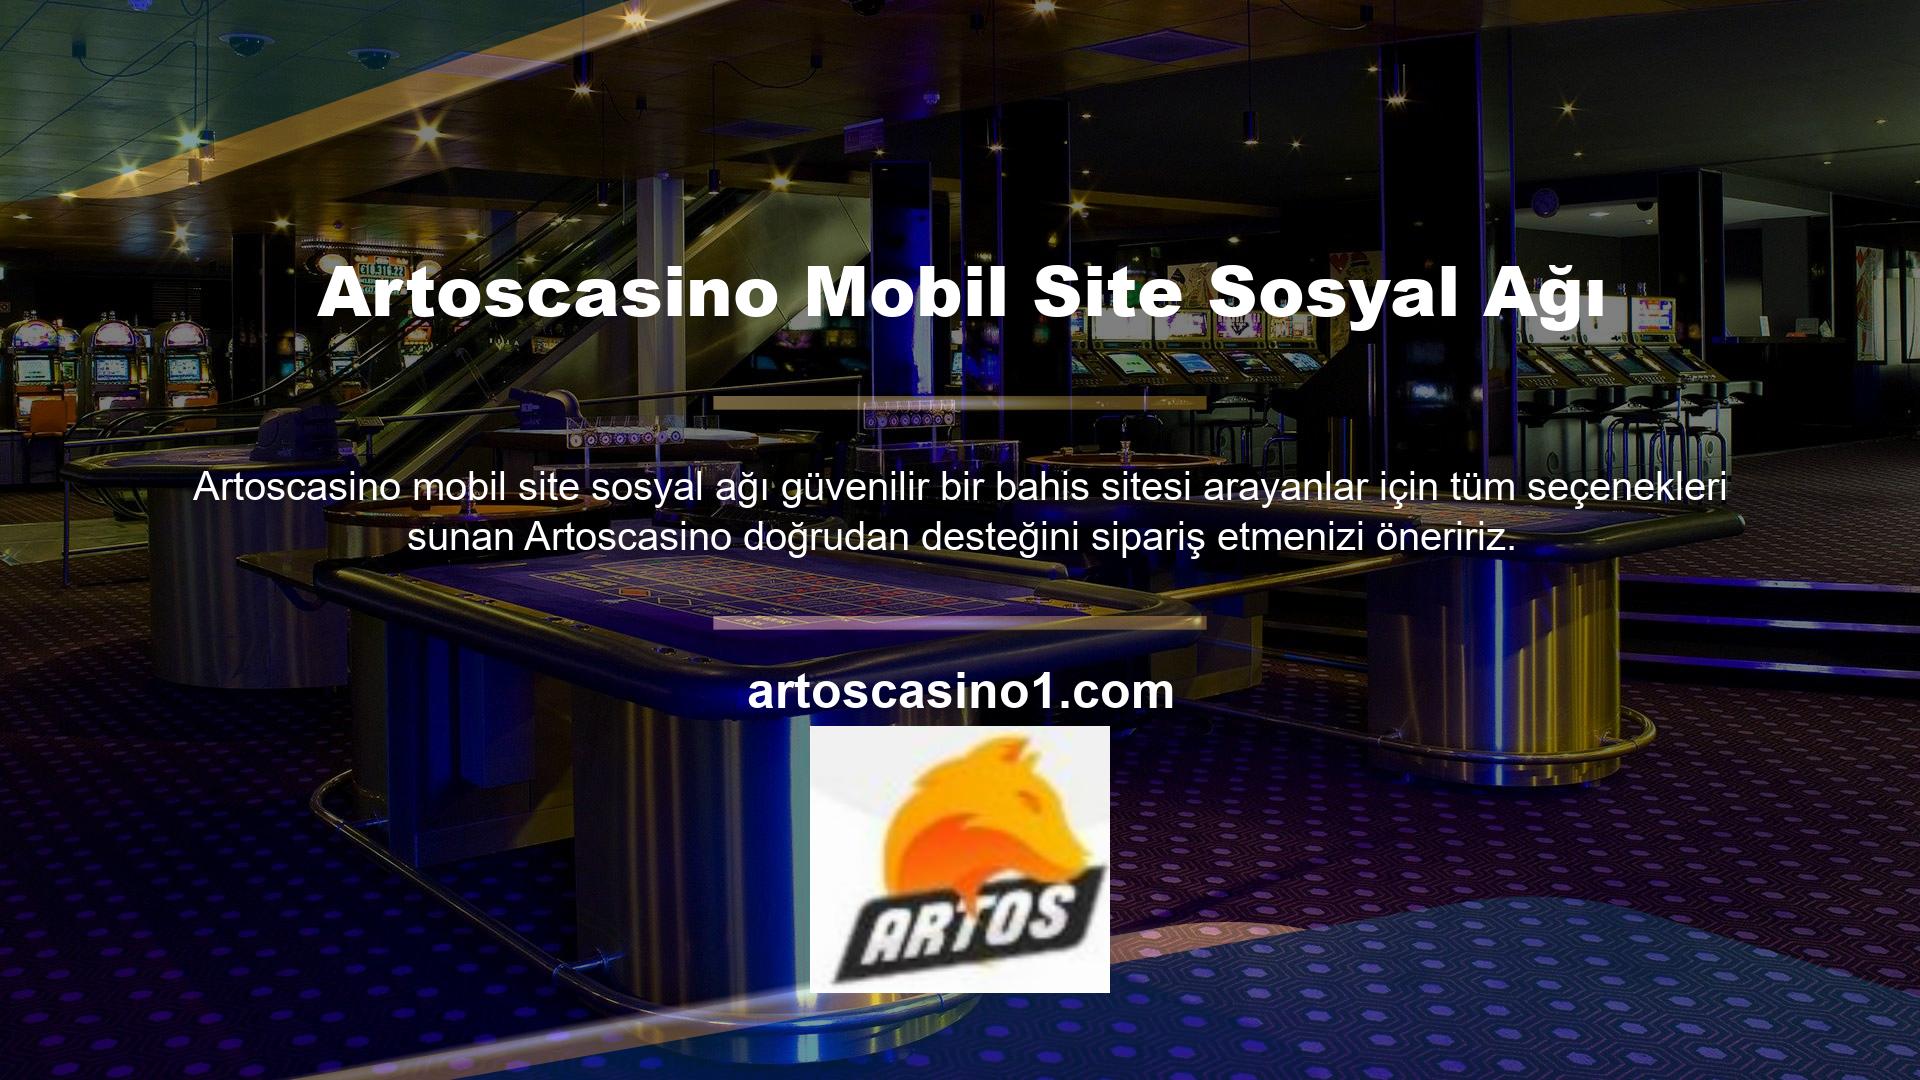 Artoscasino, casino ve çevrimiçi casino sitelerimizin kullanıcılarının memnuniyetini çok ciddiye almaktadır